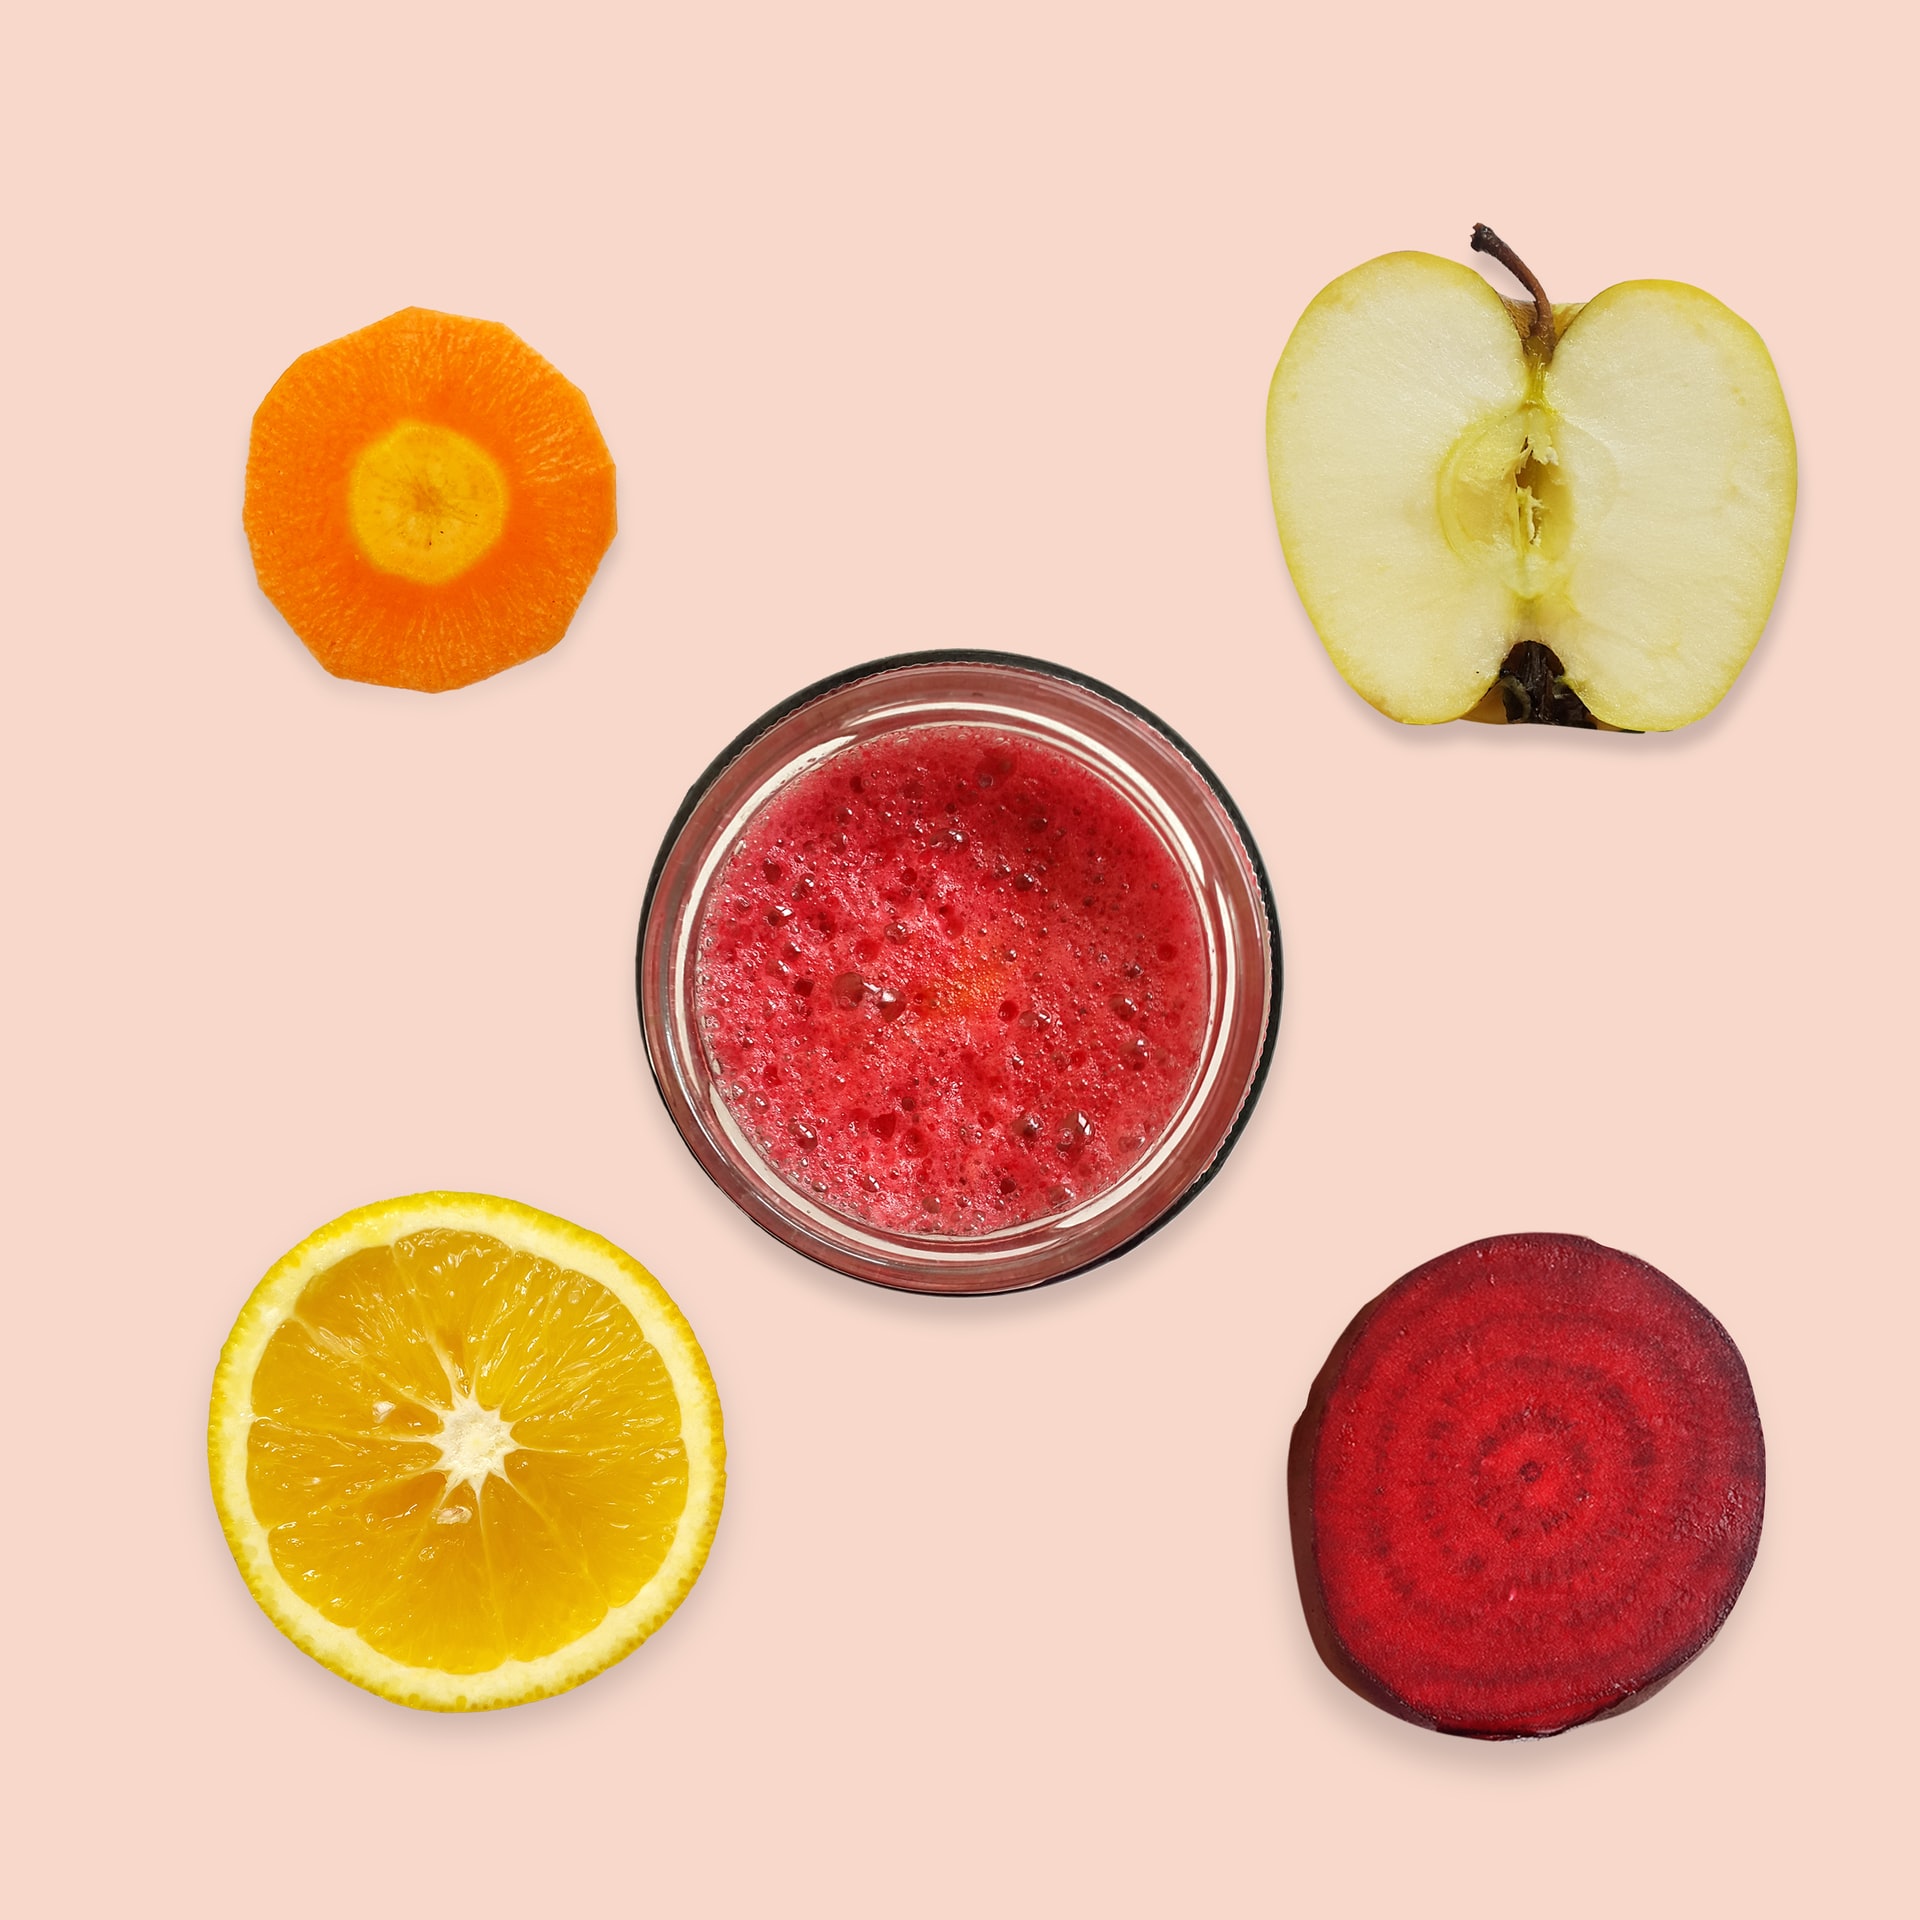 sok owocowy- szkoła promująca zdrowie